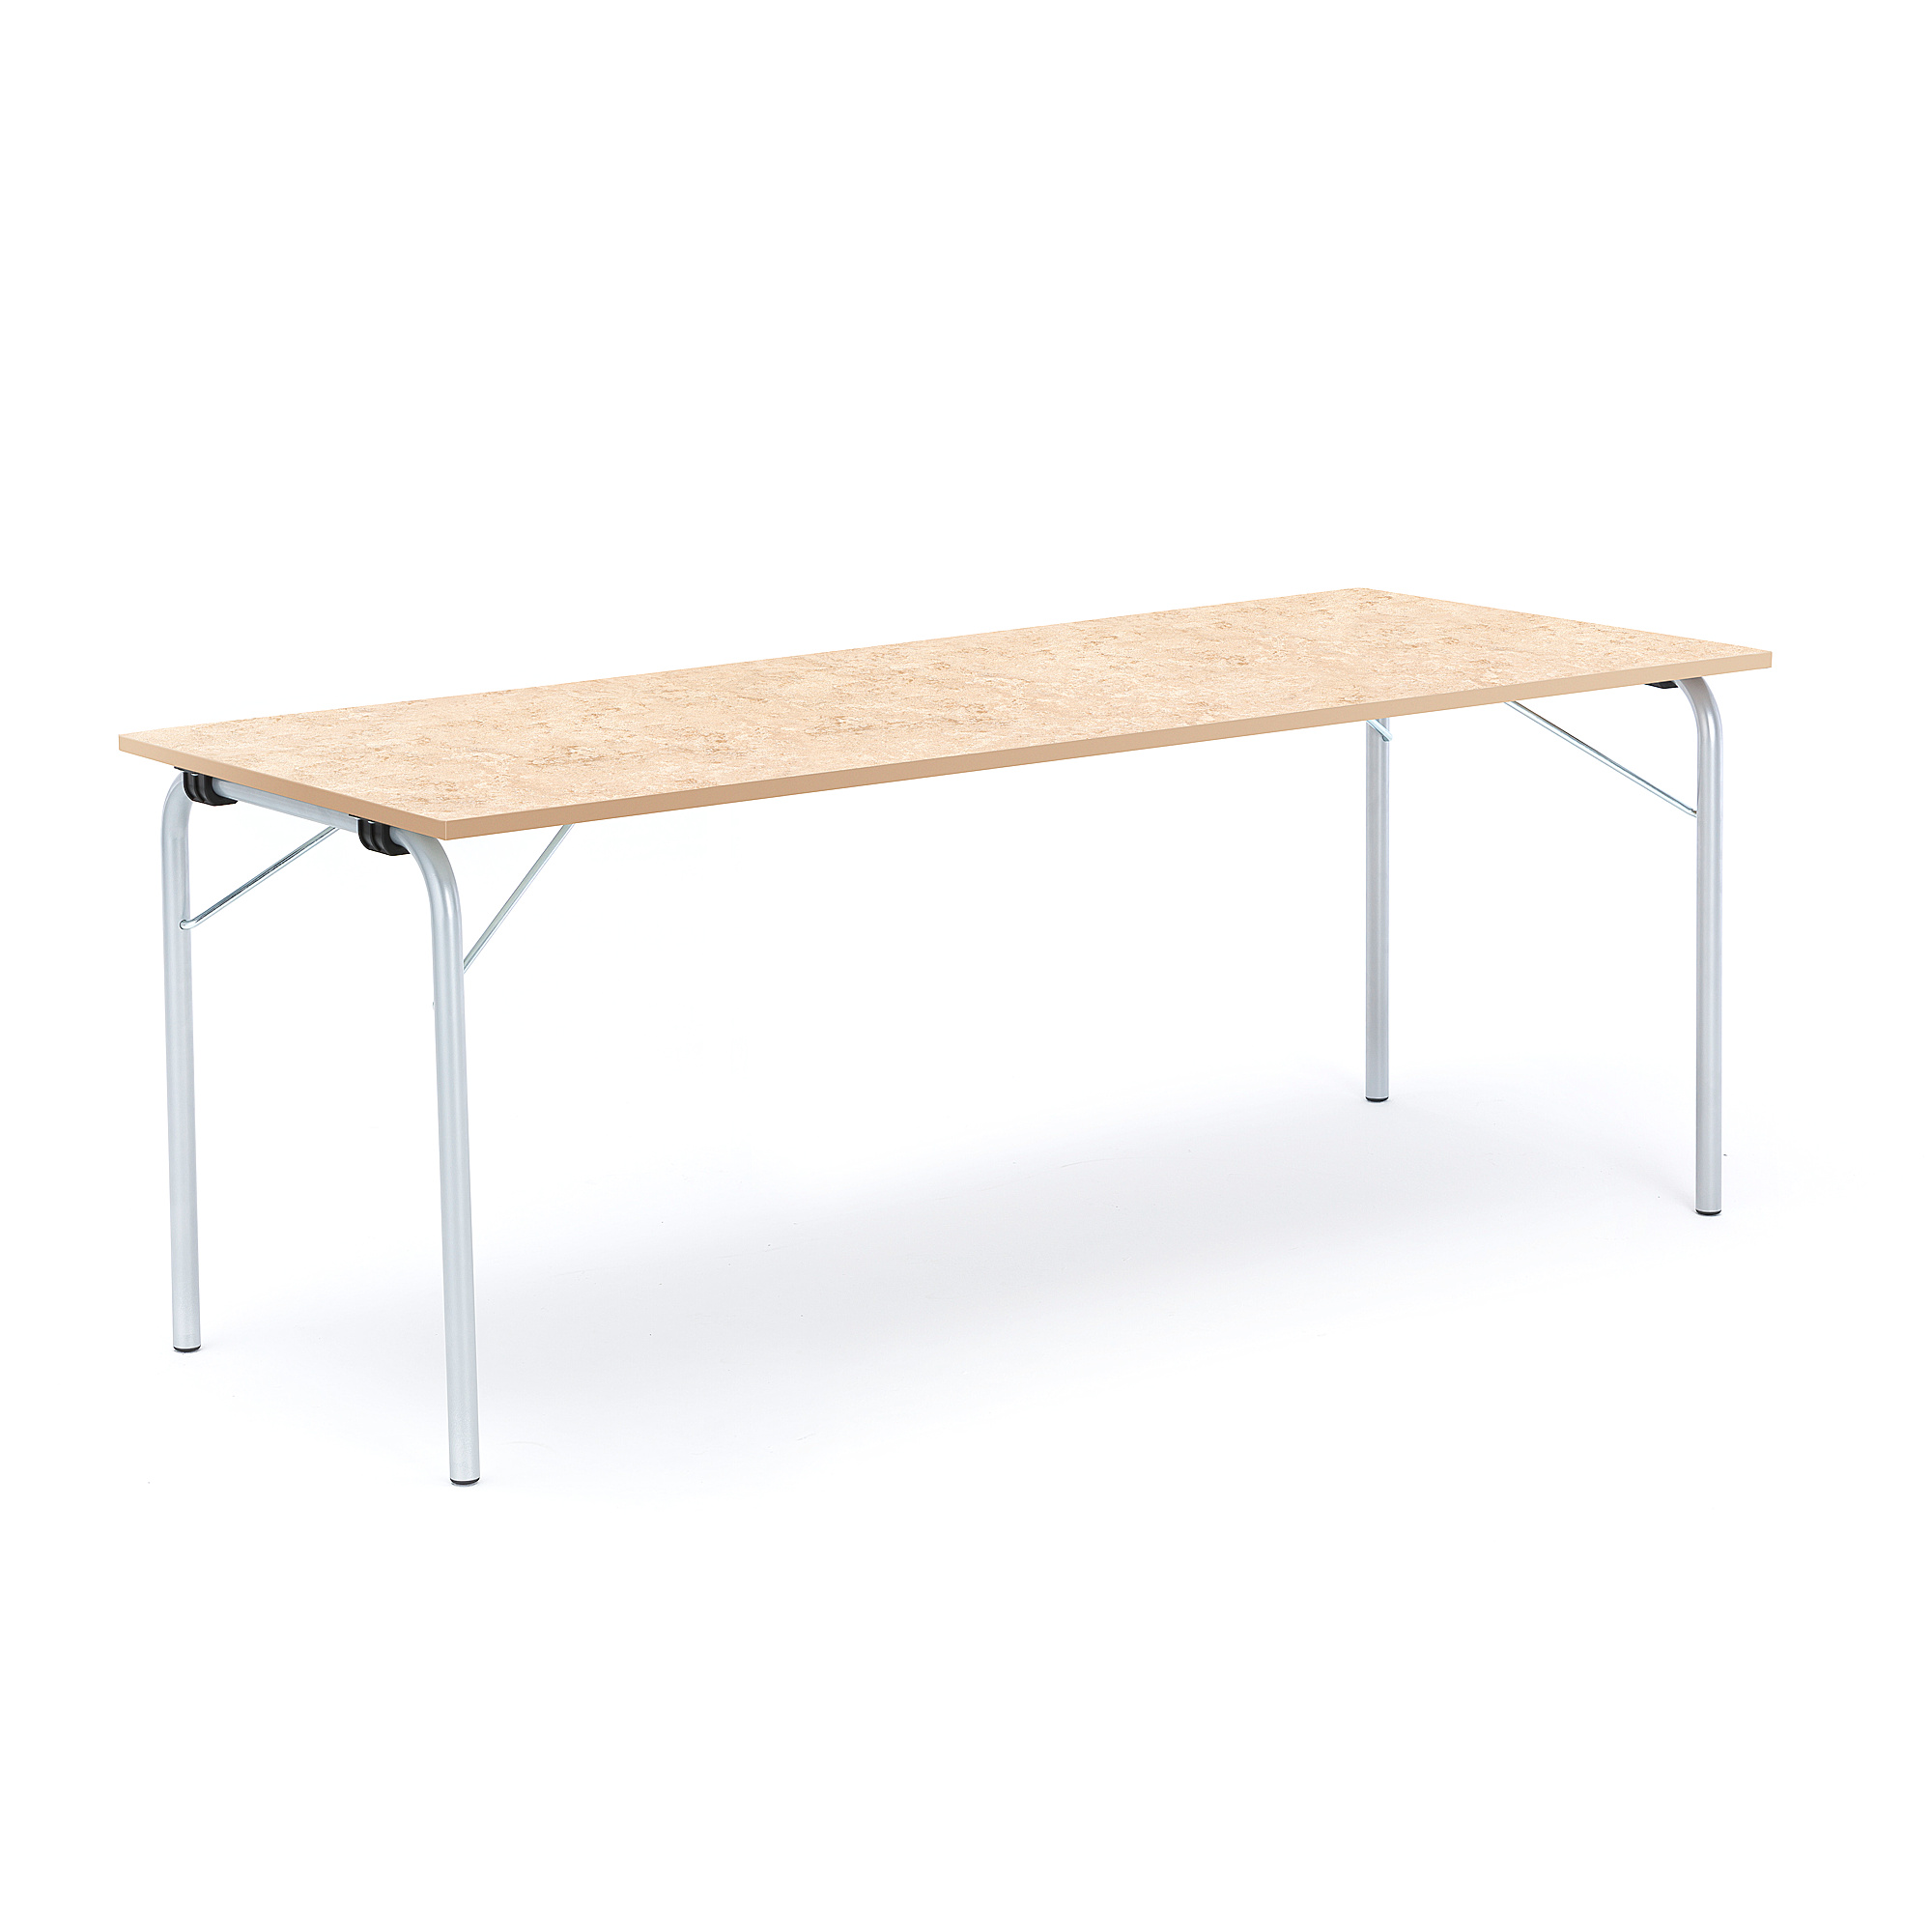 Skládací stůl NICKE, 1800x700x720 mm, stříbrný rám, béžové linoleum